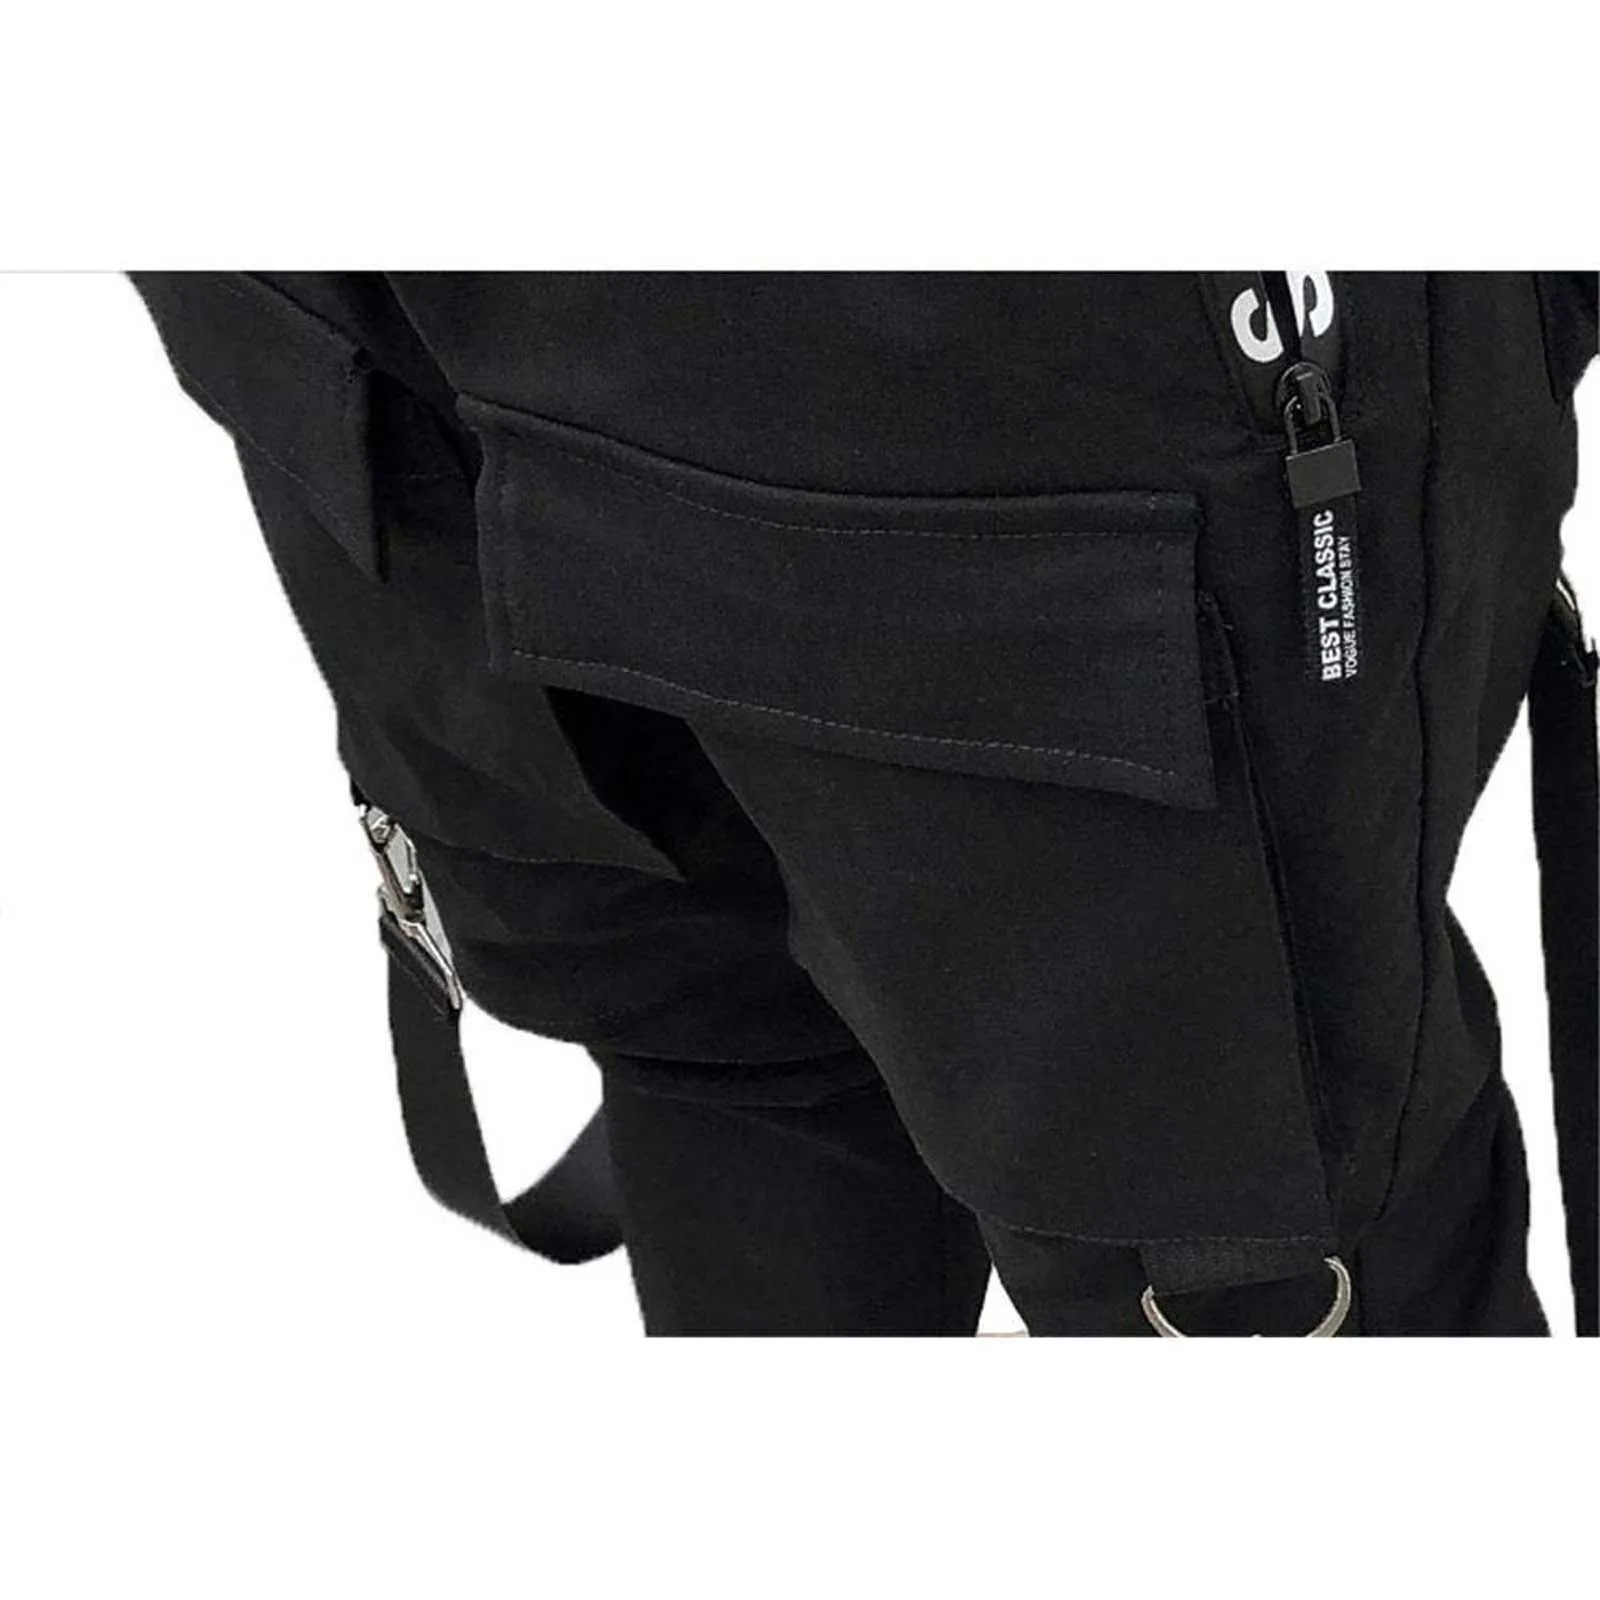 HIP-HOP Jogger мужская черная гарем комбинезон многокарманских ленты карманы карандаш брюки уличные брюки лоскутное раскатывающие спортивные штаны х0621